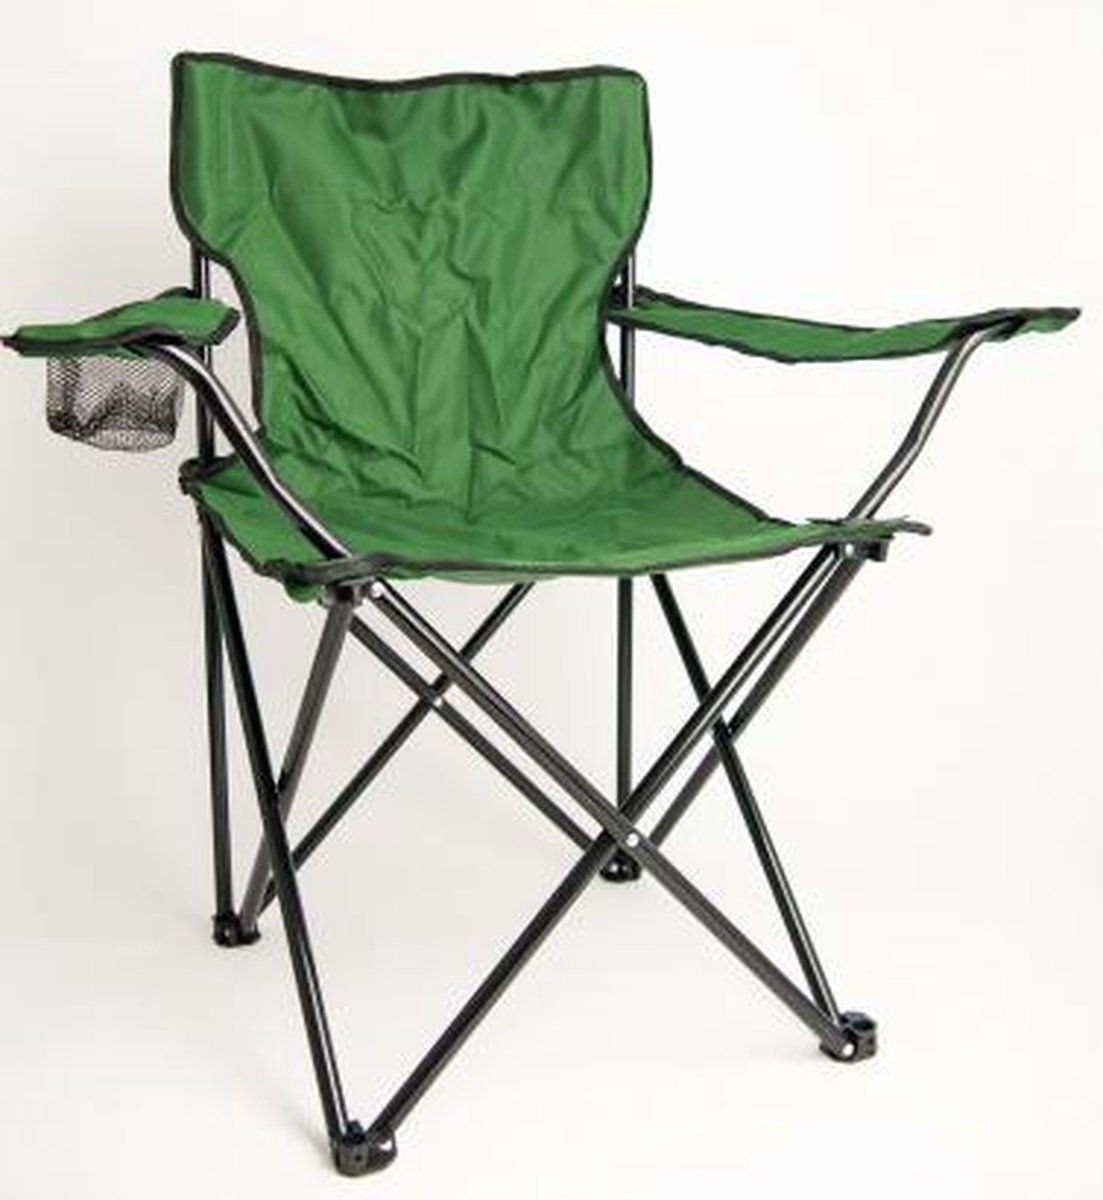 Strandstoel - Visstoel - Campeerstoel - Campingstoel - Inklapbaar - Inclusief draagtas - Groen